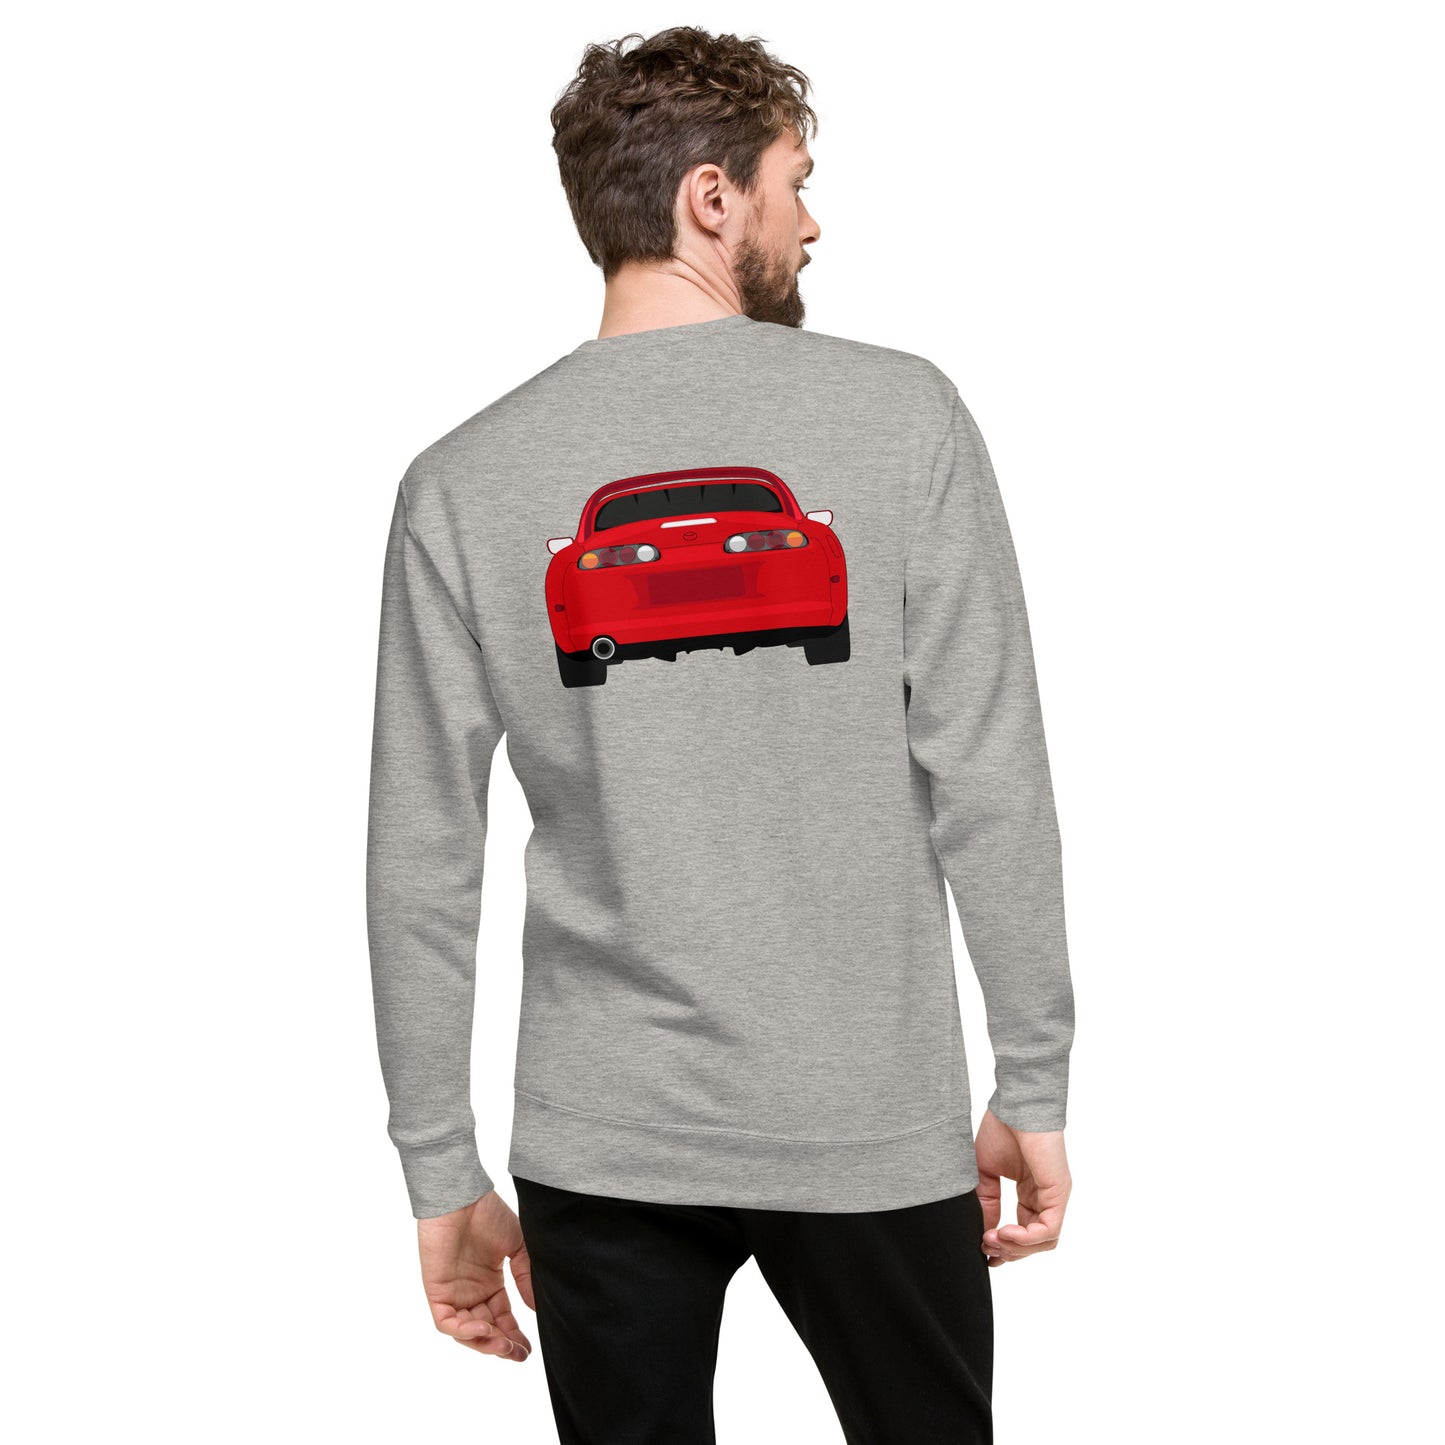 Toyota Supra MK4 "Garage Days" 1 of 100 Unisex Sweatshirt